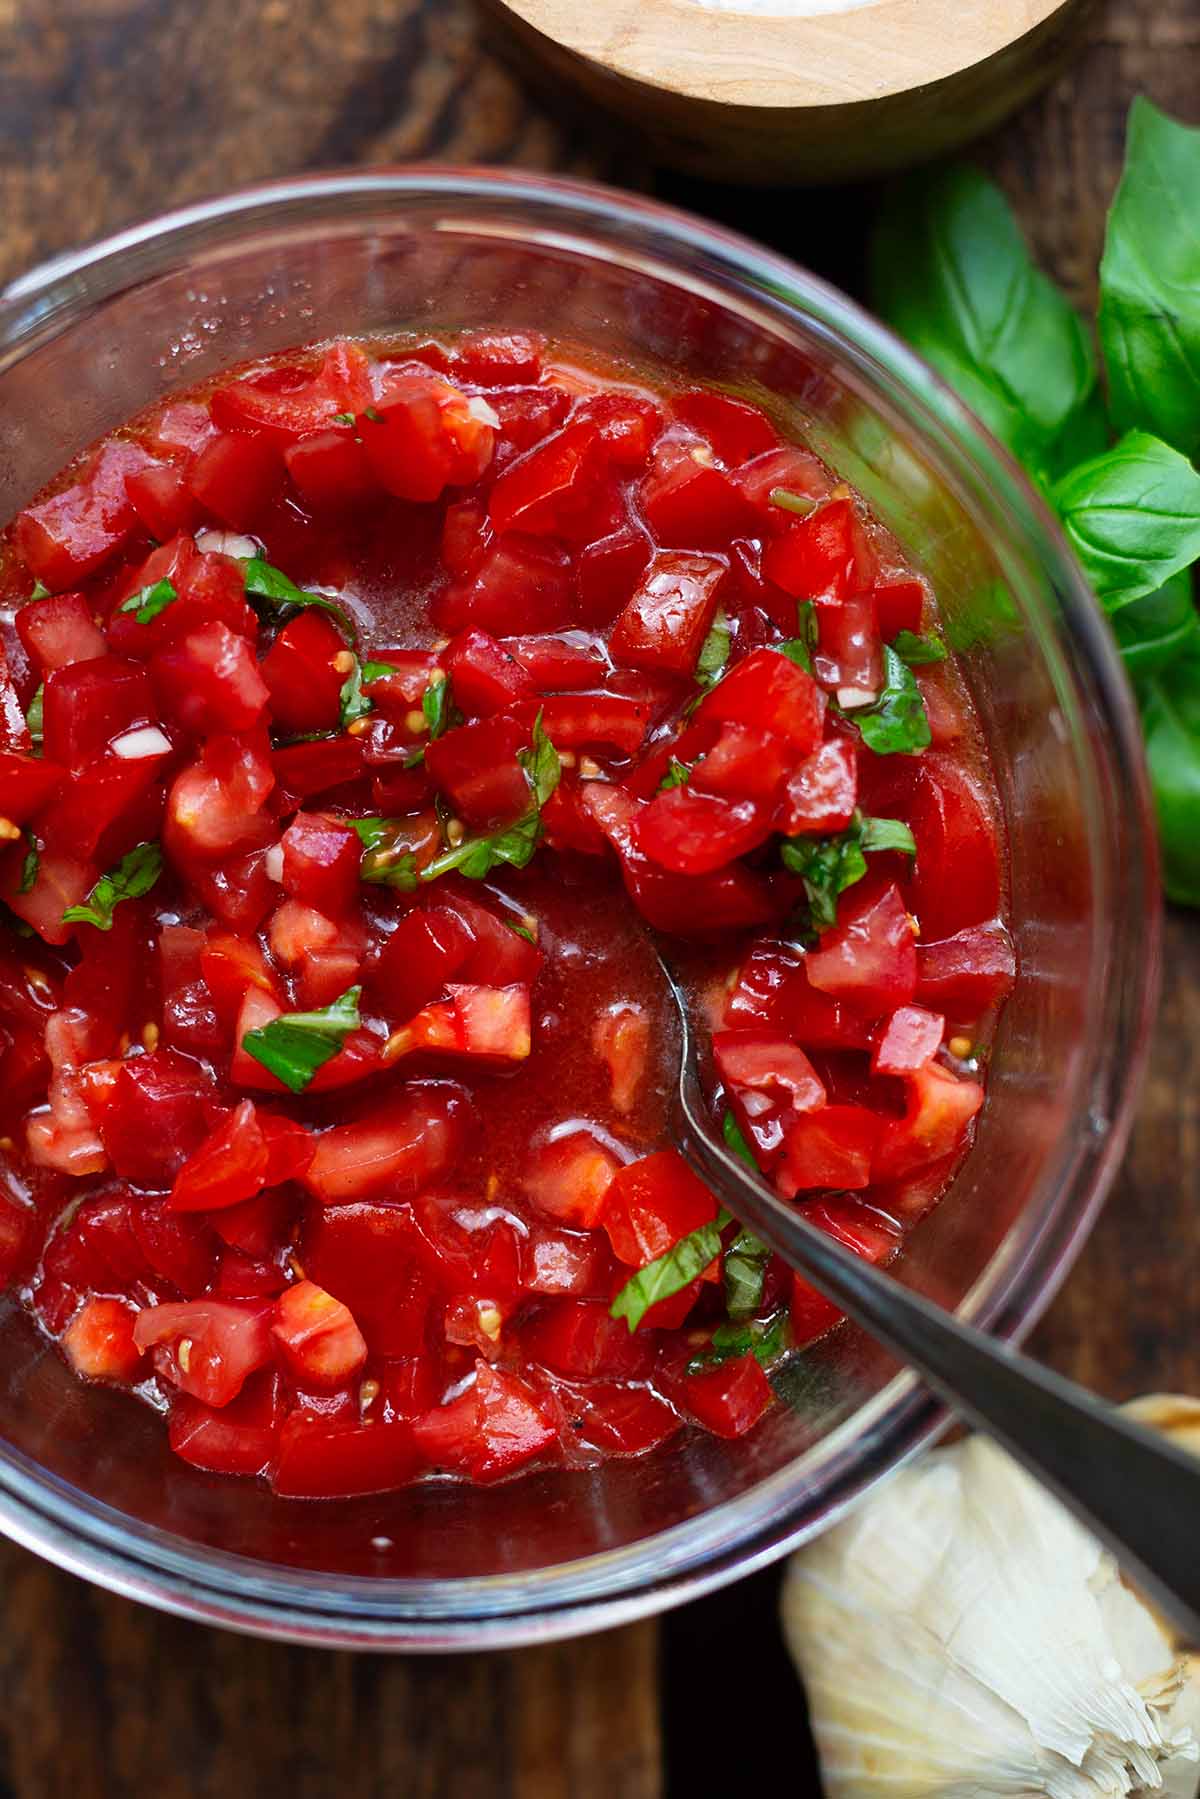 Zerschnitte Tomaten als Belag für die Bruschetta in einer Glasschüssel. Mit dem Basilikum, Olivenölm Knoblauch und Gewürzen abgeschmeckt.